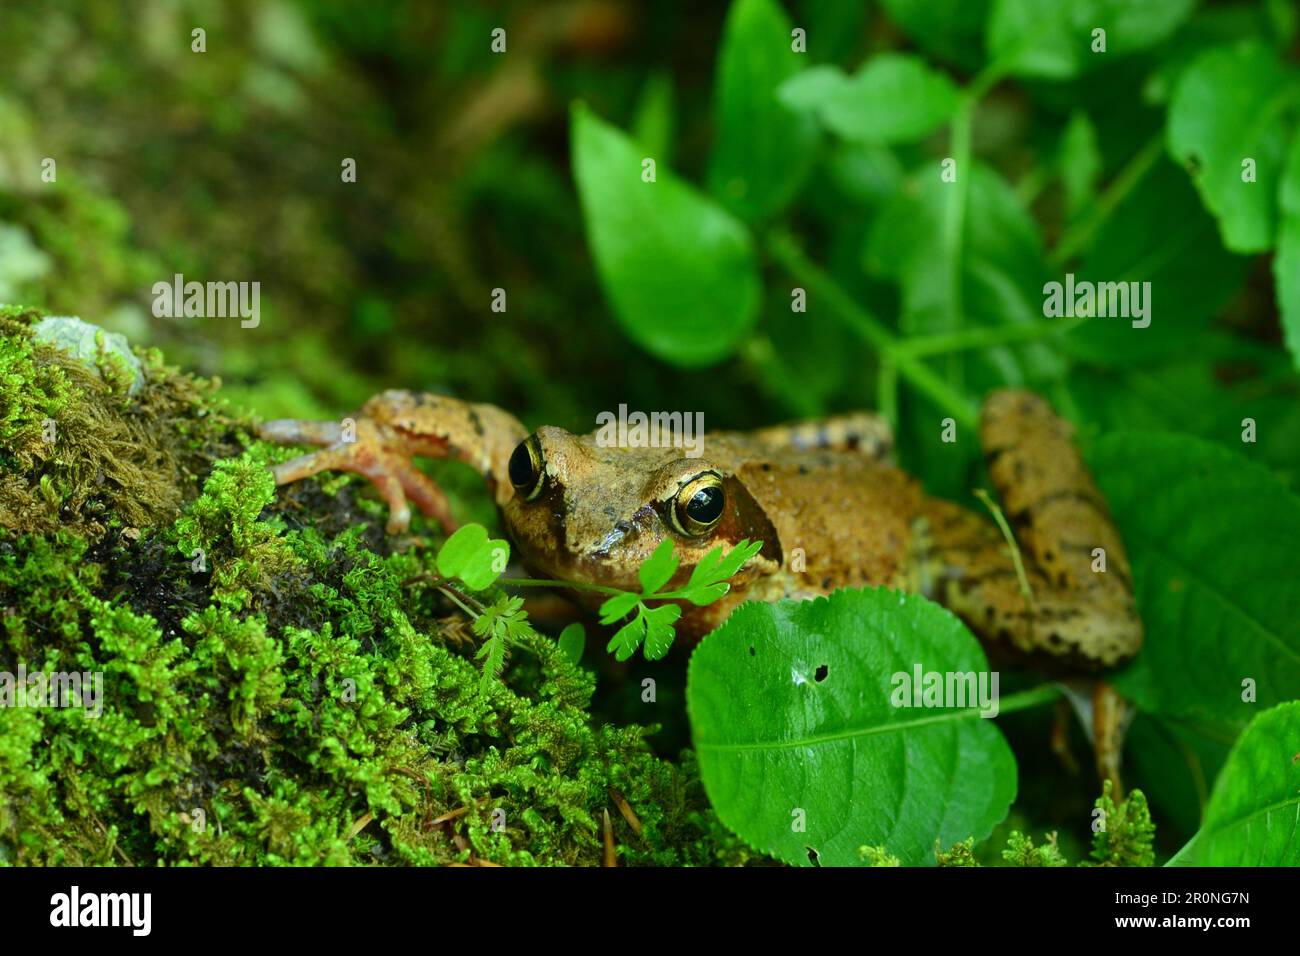 Nahaufnahme des Agile Frog (Rana dalmatina), der sich hinter Blättern versteckt Stockfoto